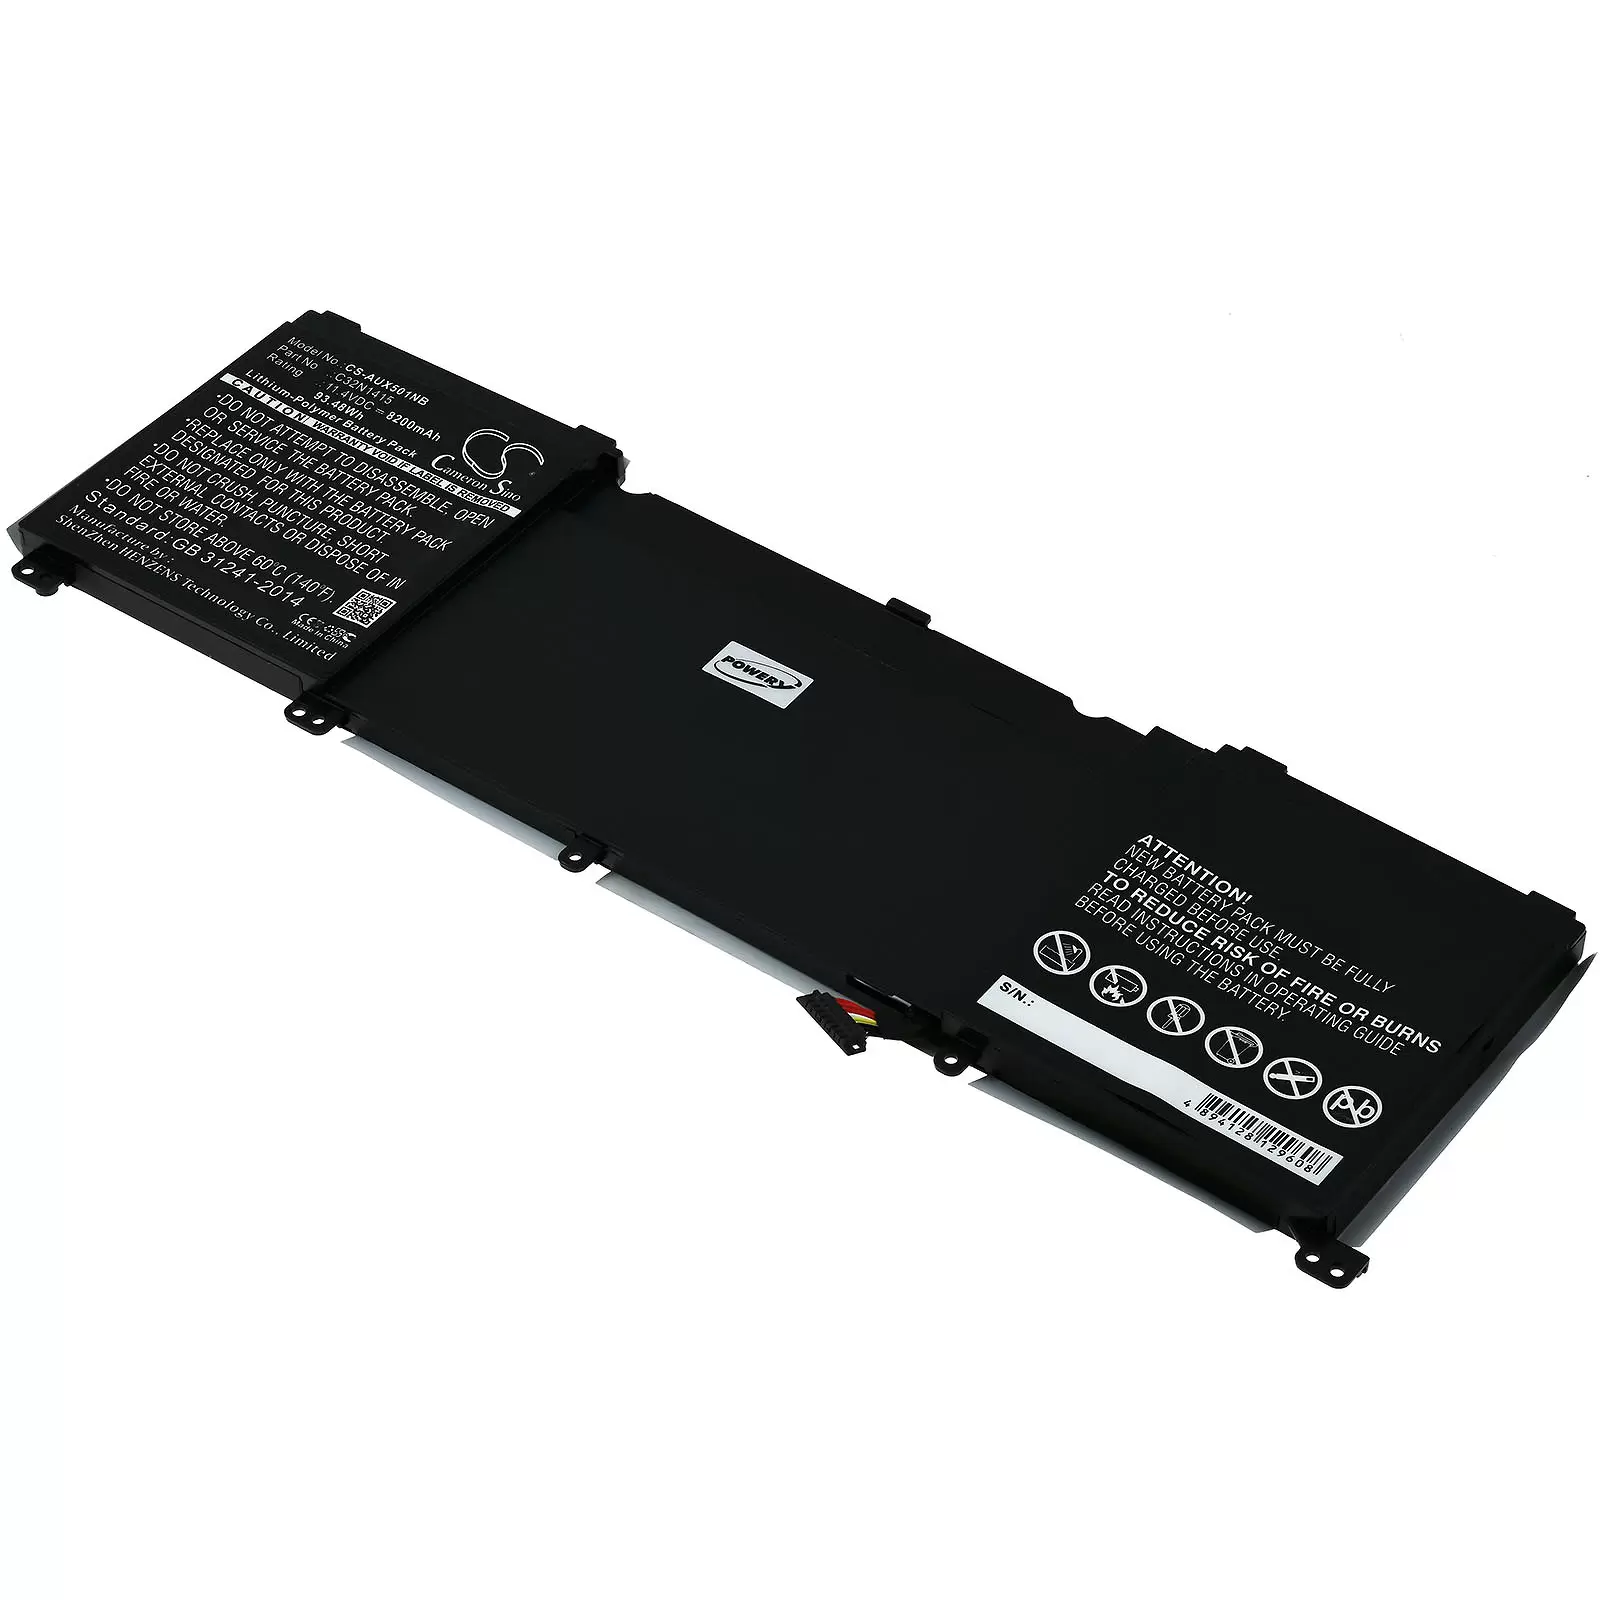 Akku für Laptop Asus ZenBook Pro UX501J / UX501JW / Typ C32N1415